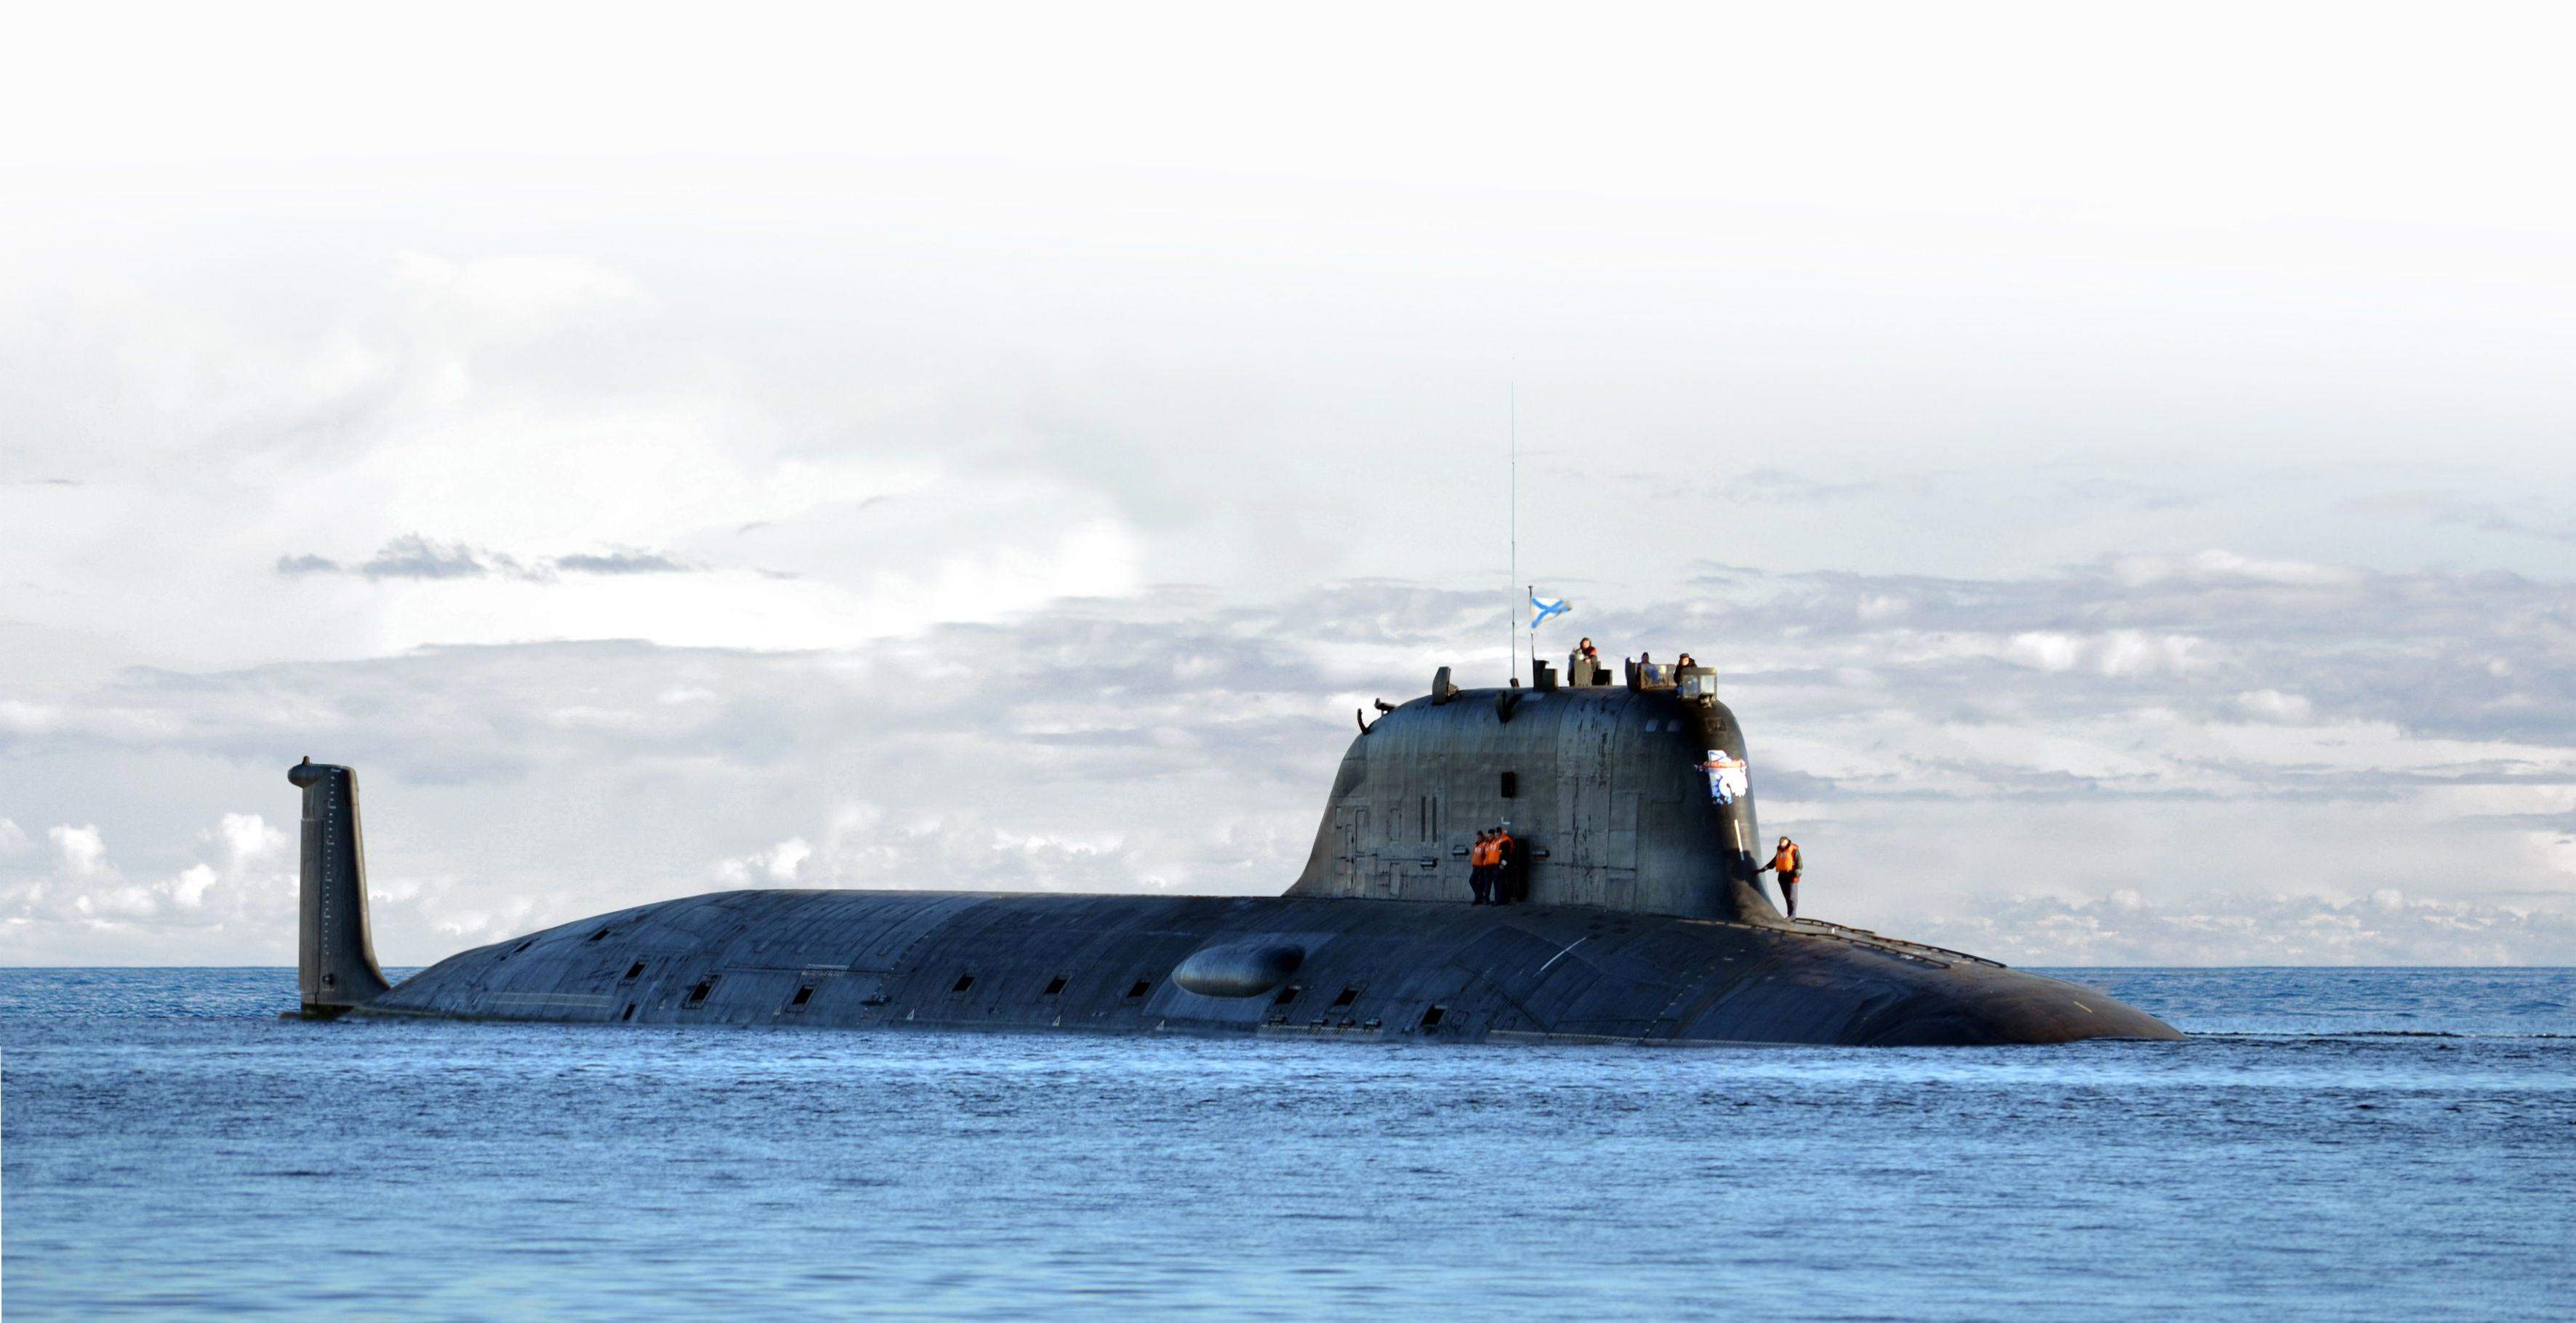 是苏联导弹核潜艇发展史上一次飞跃,也是全世界数量最多核潜艇系列(该